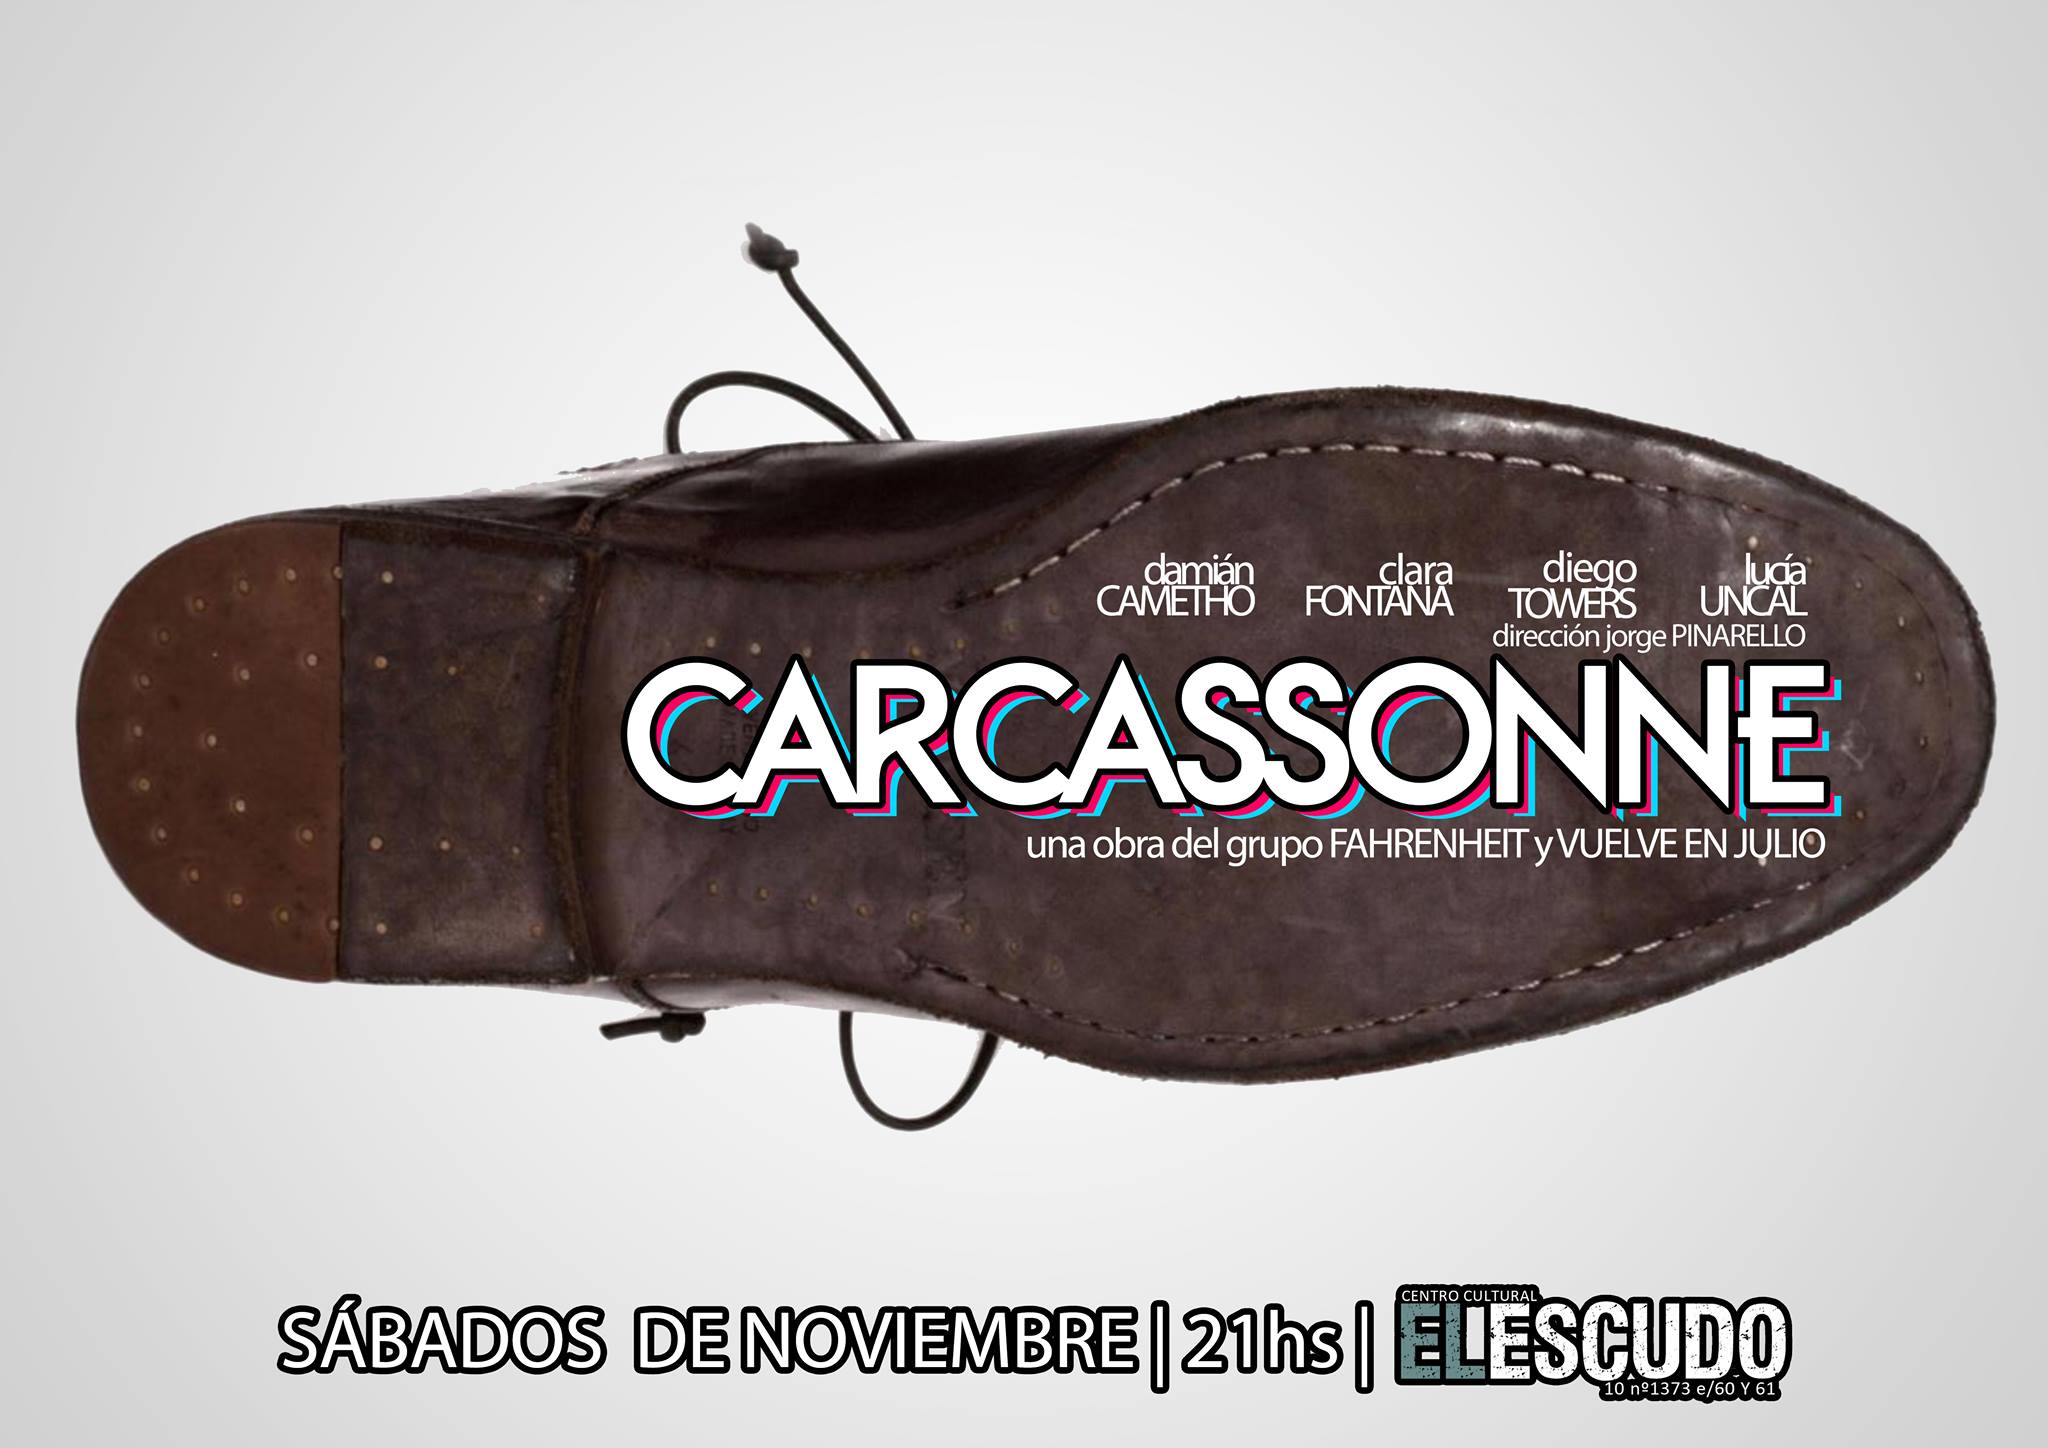 File:carcassonne flyer.jpg